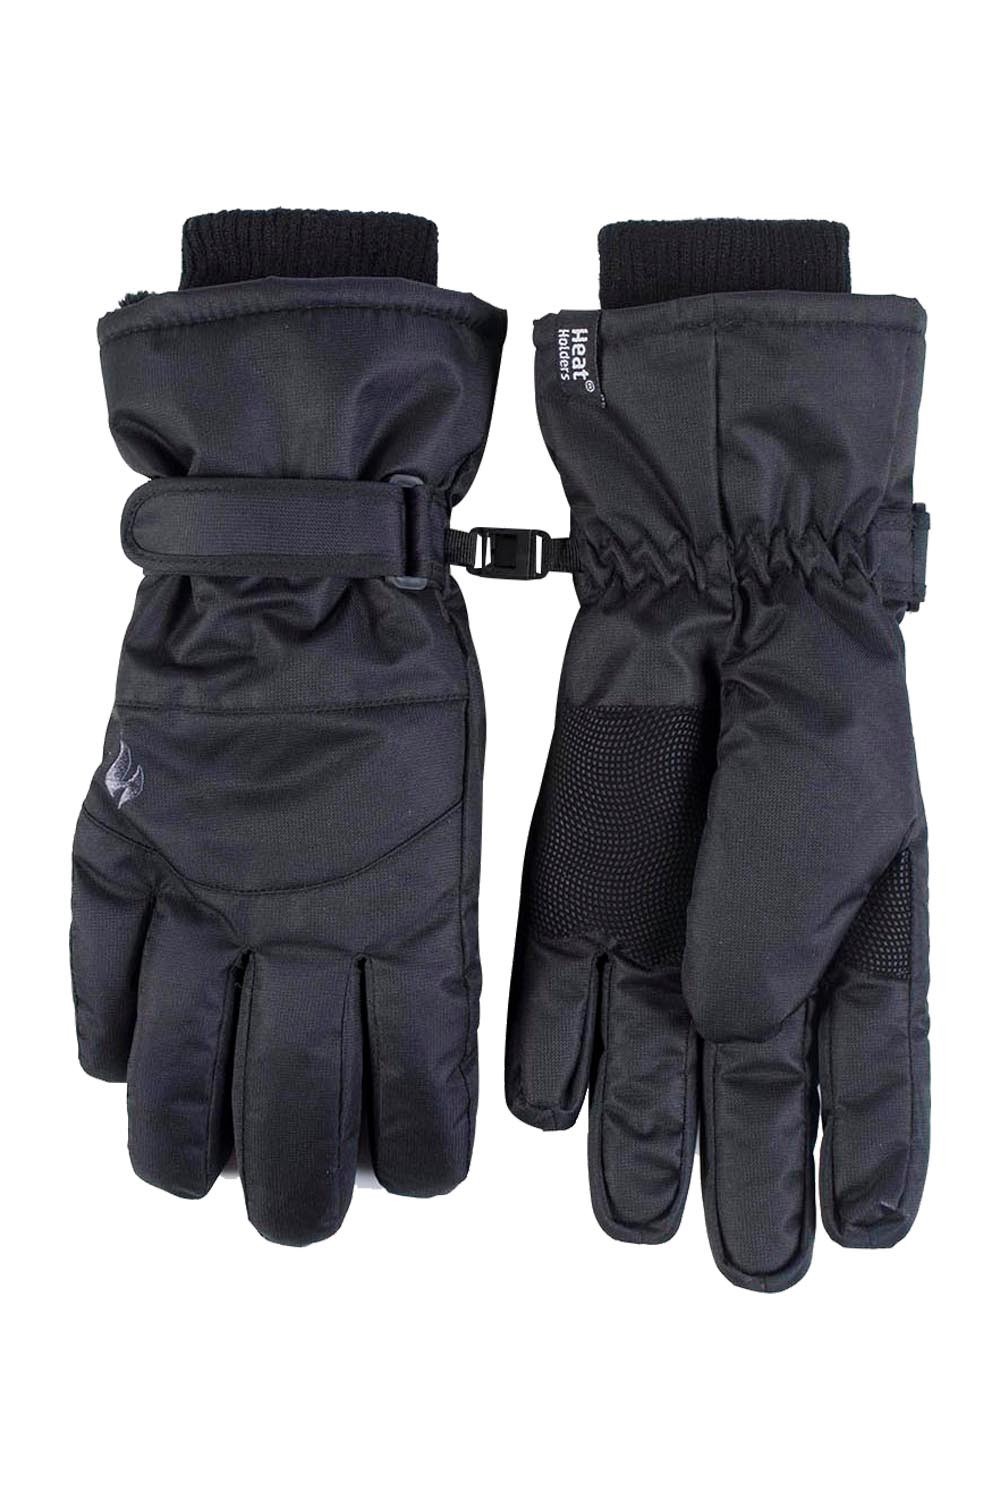 Mens Waterproof Thermal Ski Gloves -